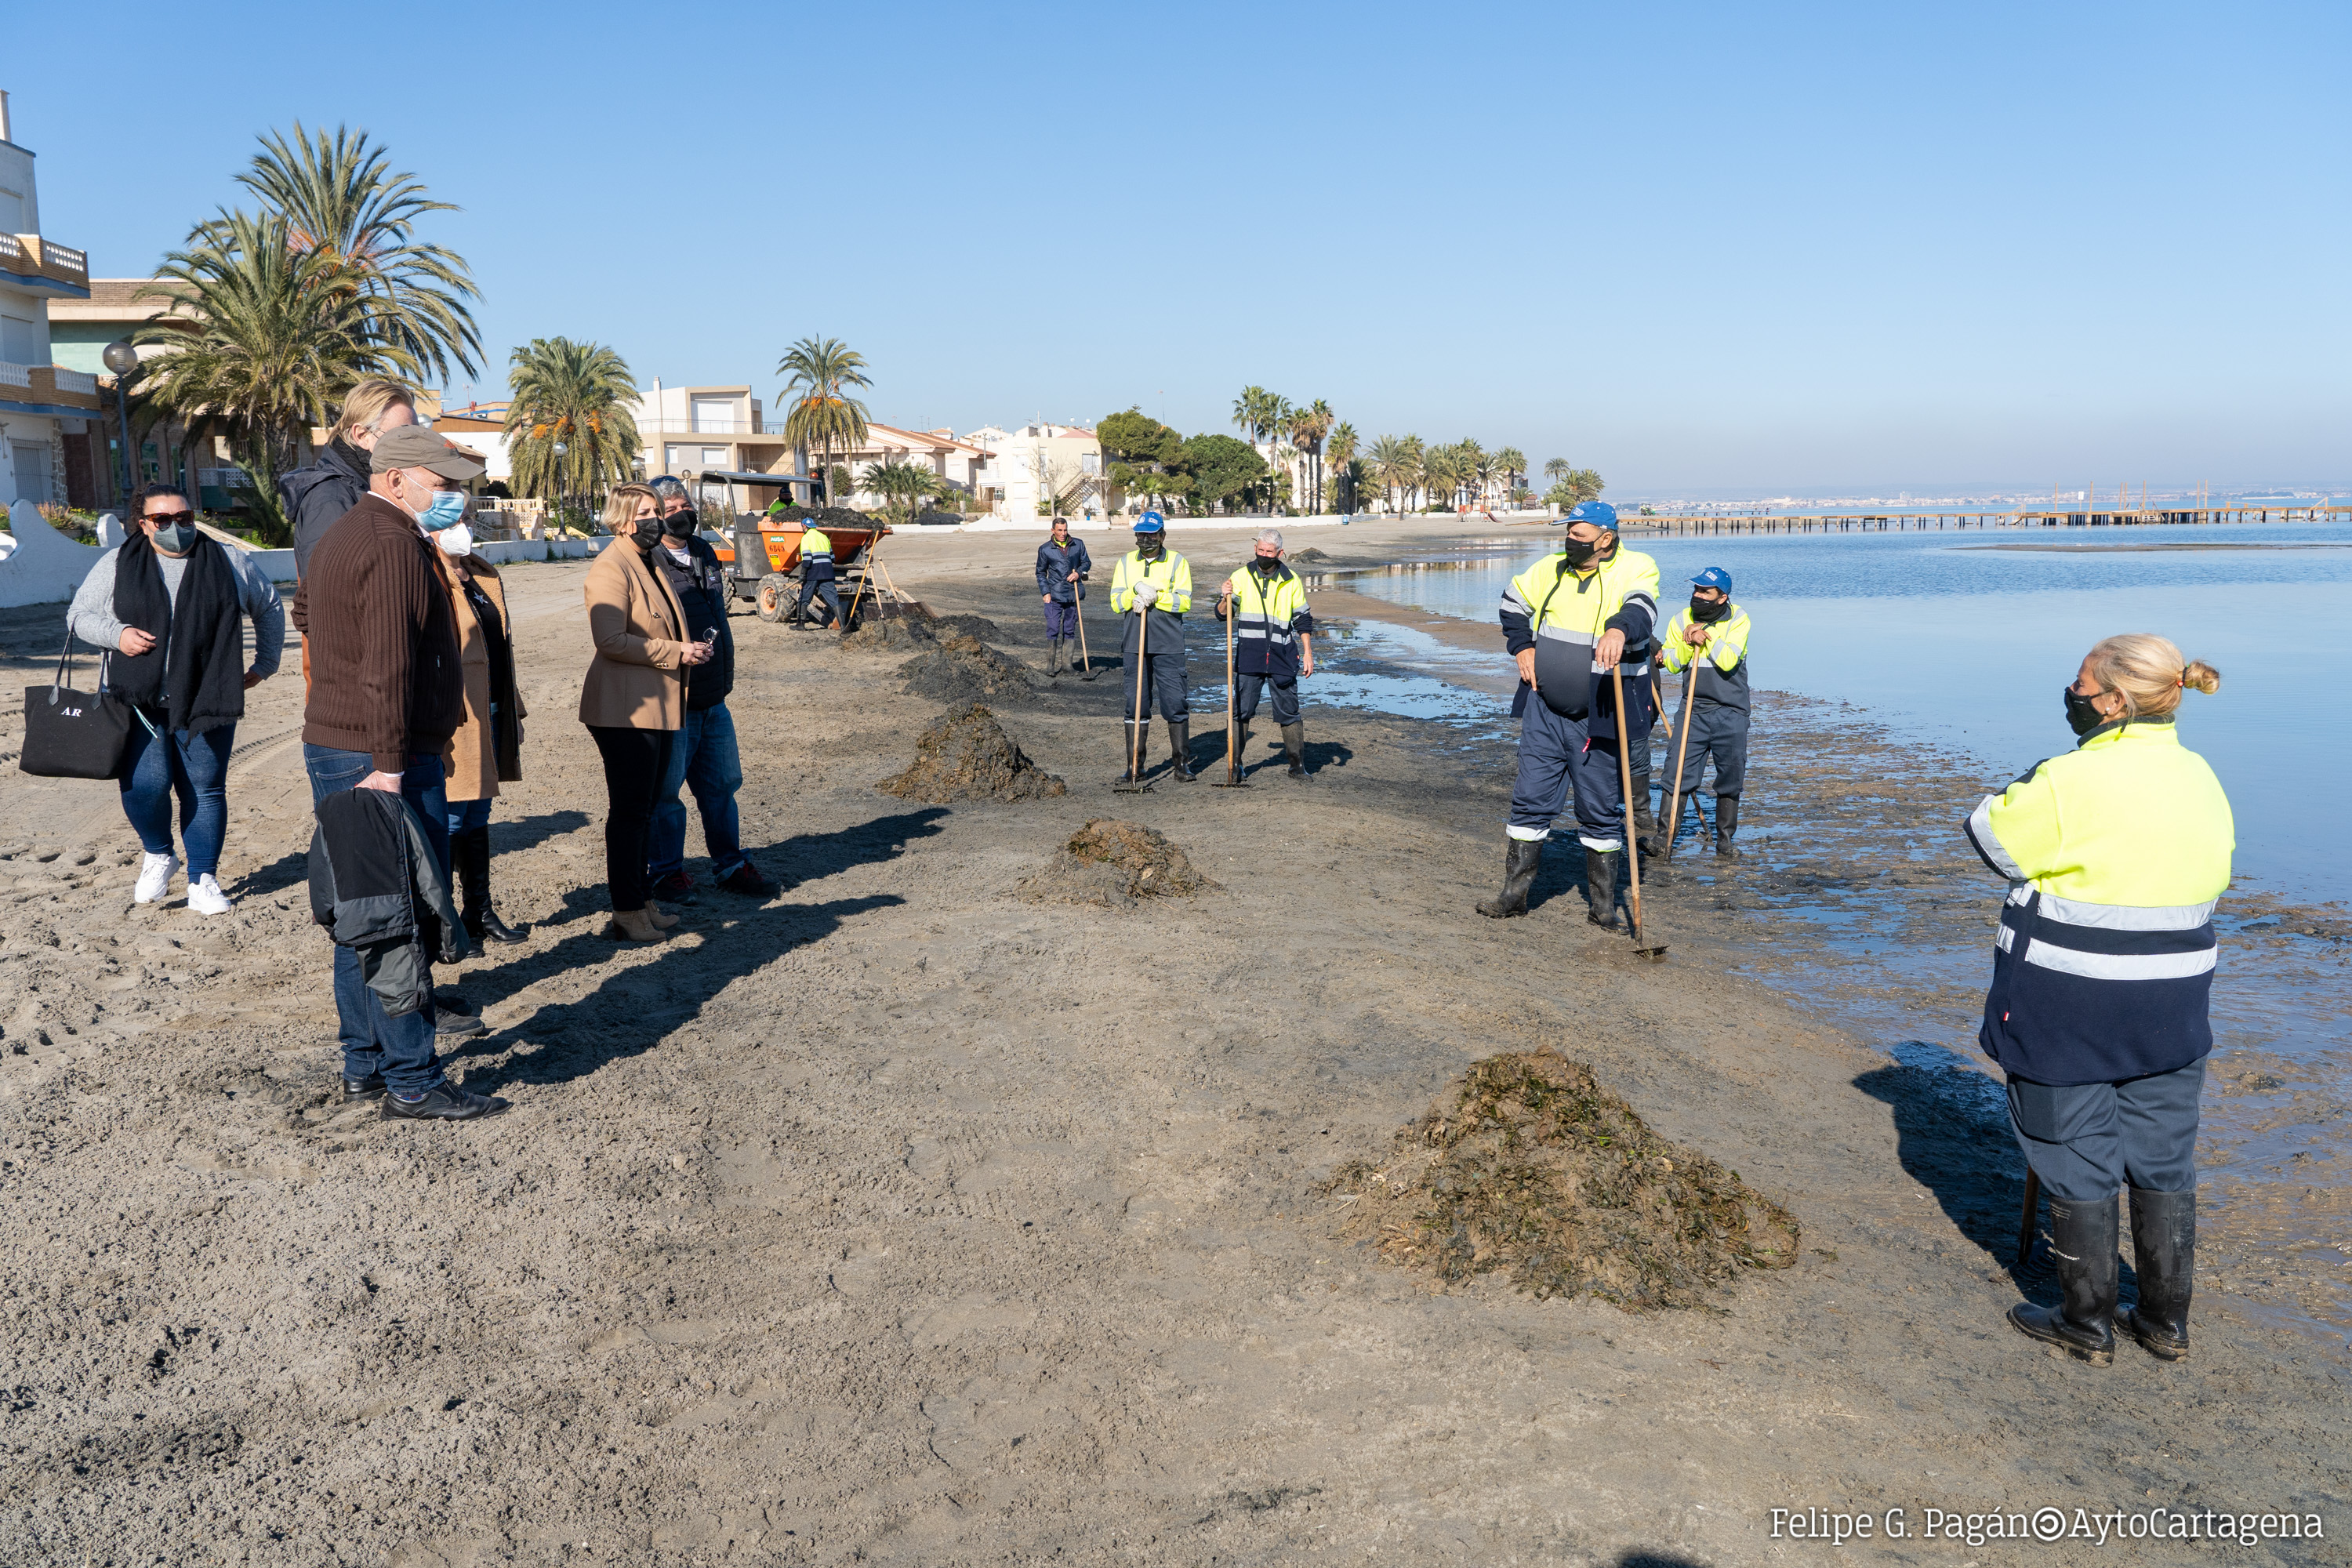 El Ayuntamiento invertirá 250.000 euros en materializar las propuestas de los vecinos del Mar Menor